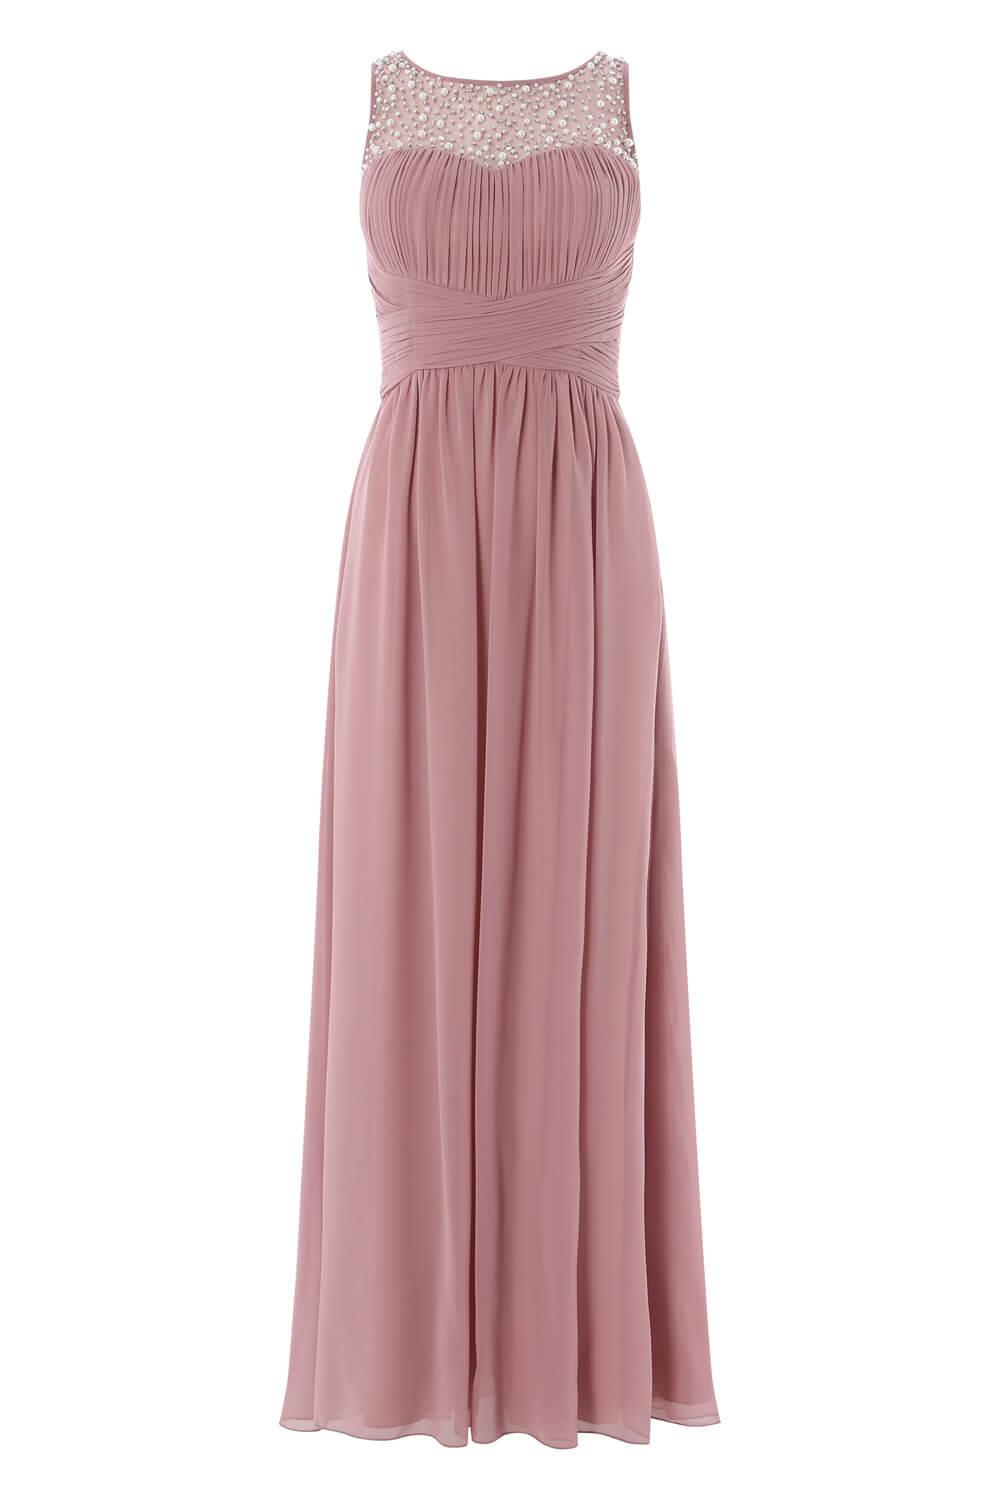 Rose Bead Embellished Maxi Dress, Image 5 of 5